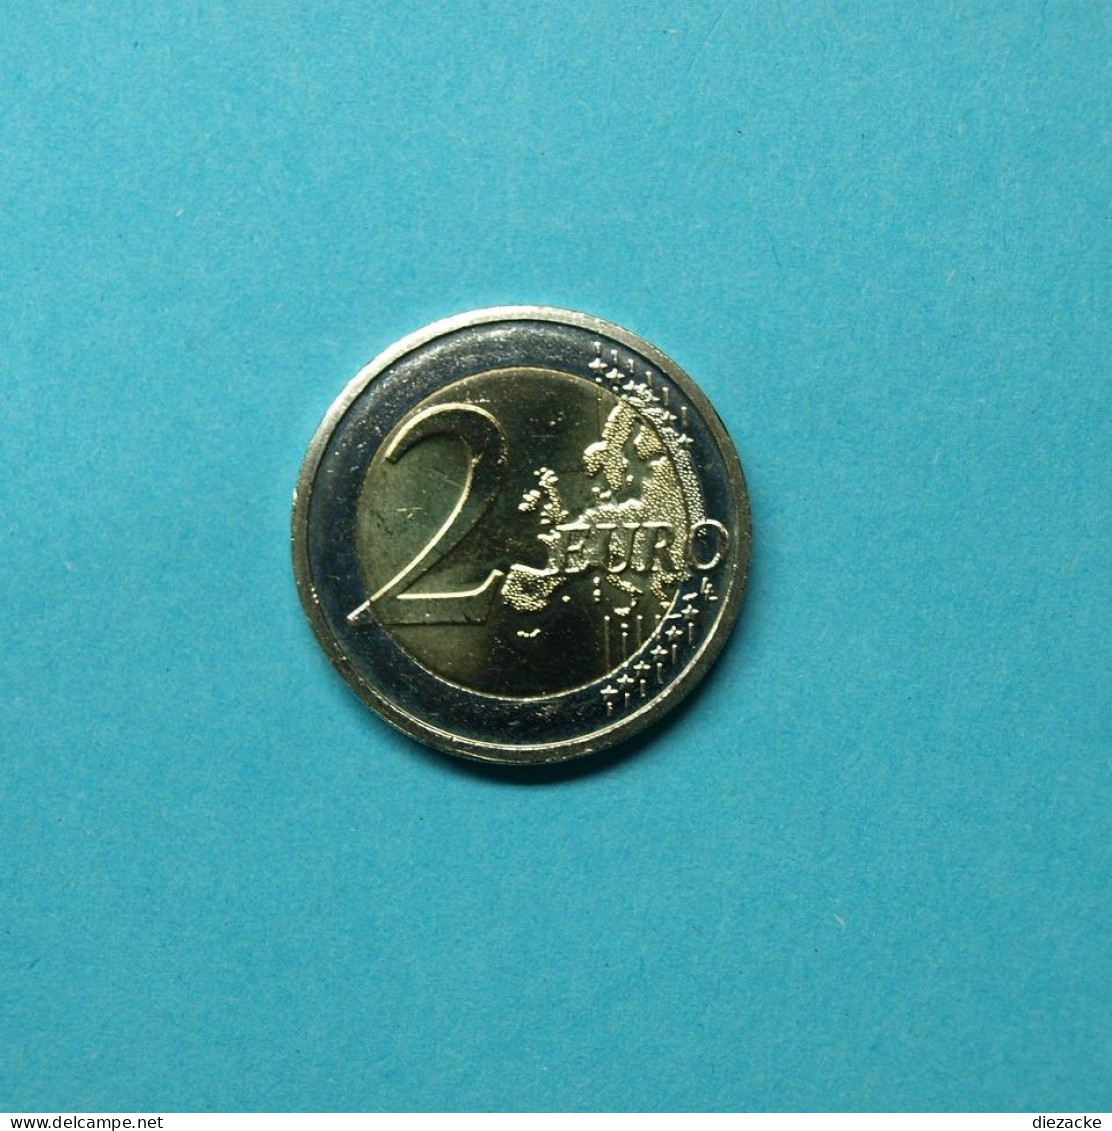 Irland 2012 2 Euro 10 Jahre Euro Bargeld Unzirkuliert (M4413 - Irland